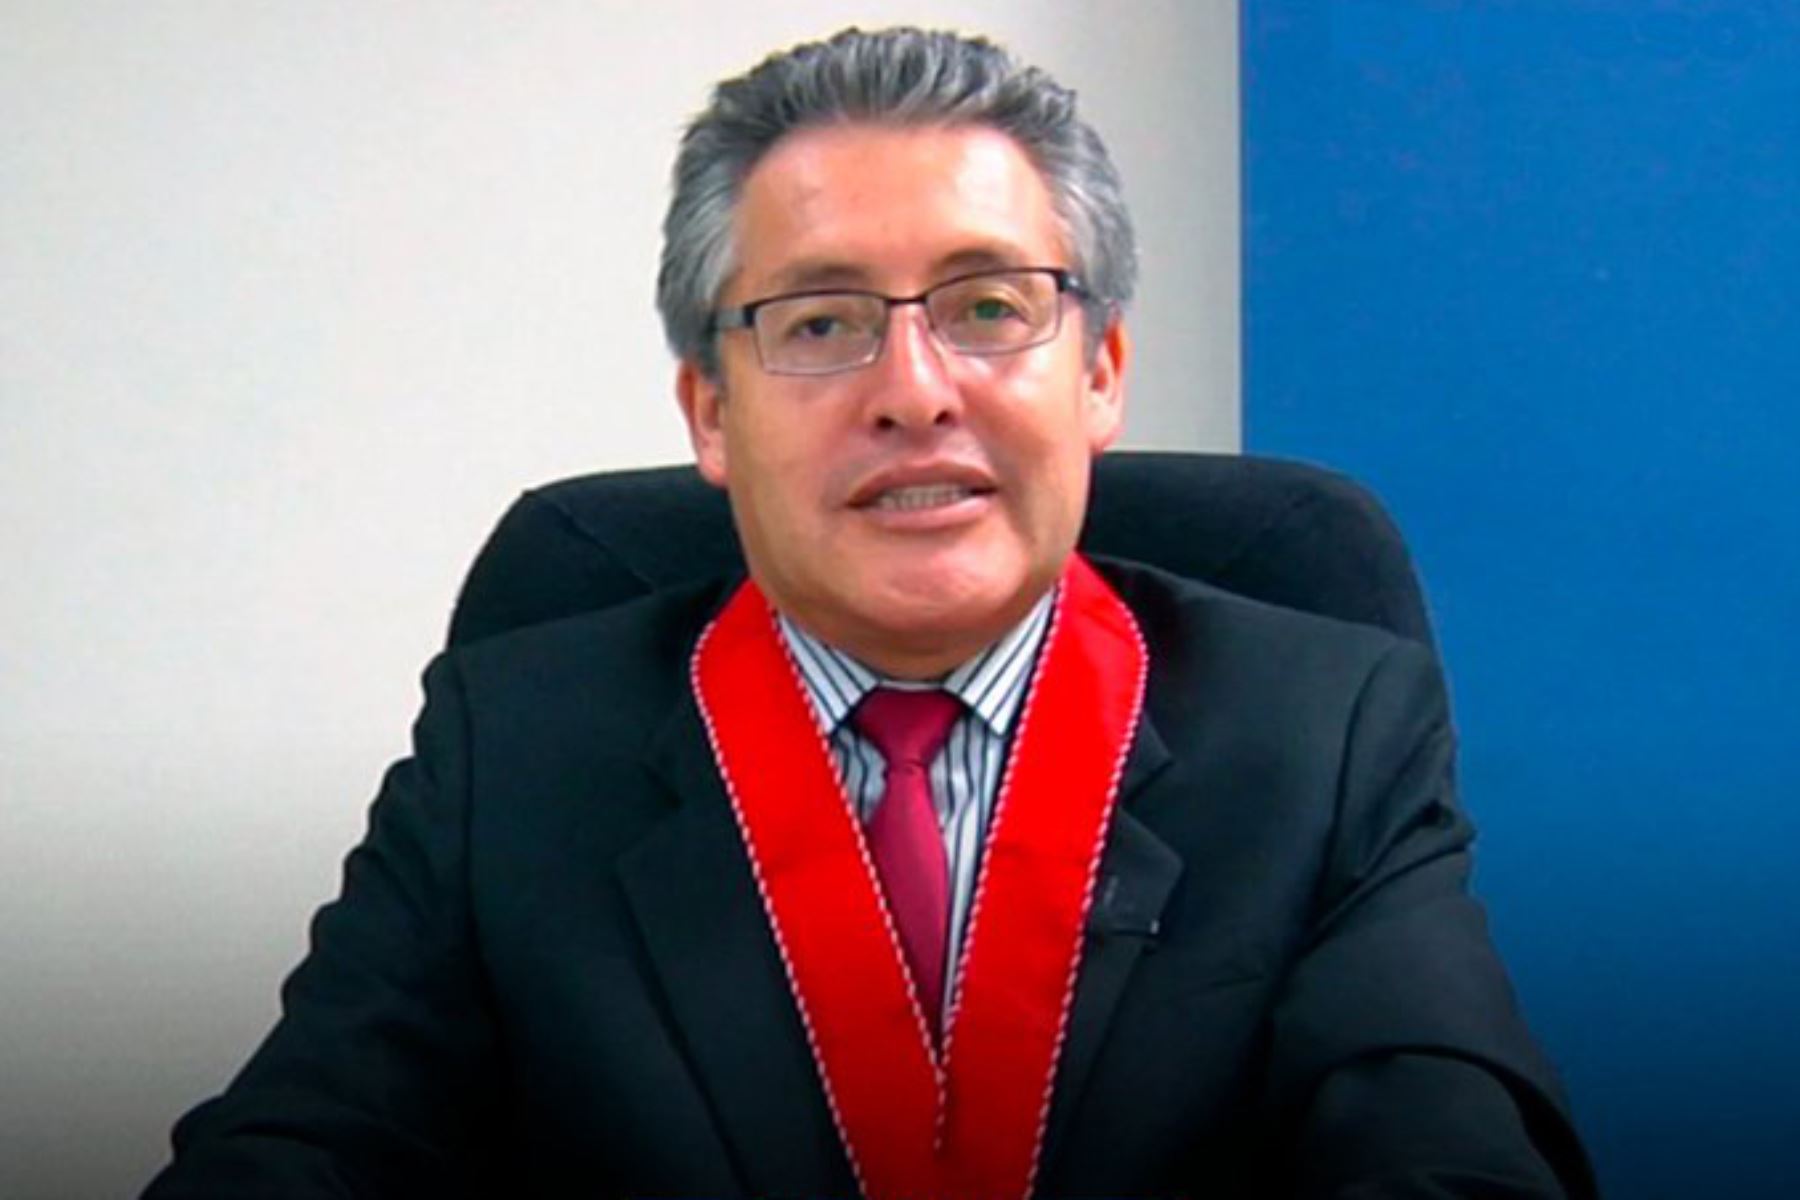 Juan Villena es nuevo Fiscal de la Nación y revelan que fue amenazado por caviares